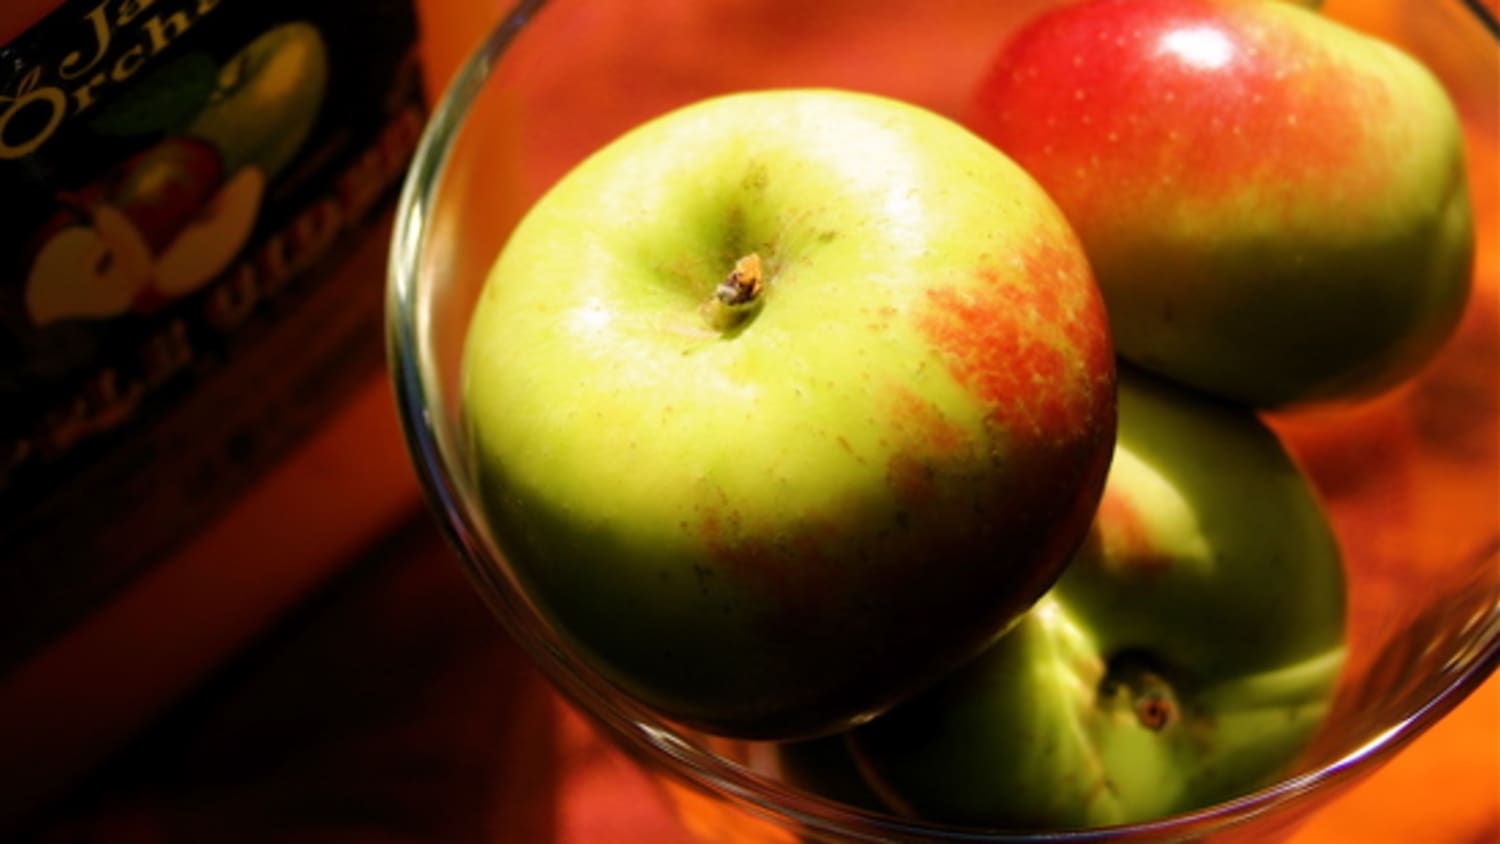 Apple cider không chỉ là một thức uống giúp giảm cân mà còn có nhiều lợi ích về sức khỏe. Đặc biệt, nó còn giúp tăng cường hệ miễn dịch và giảm nguy cơ mắc các bệnh mãn tính. Tìm hiểu thêm về apple cider qua hình ảnh.